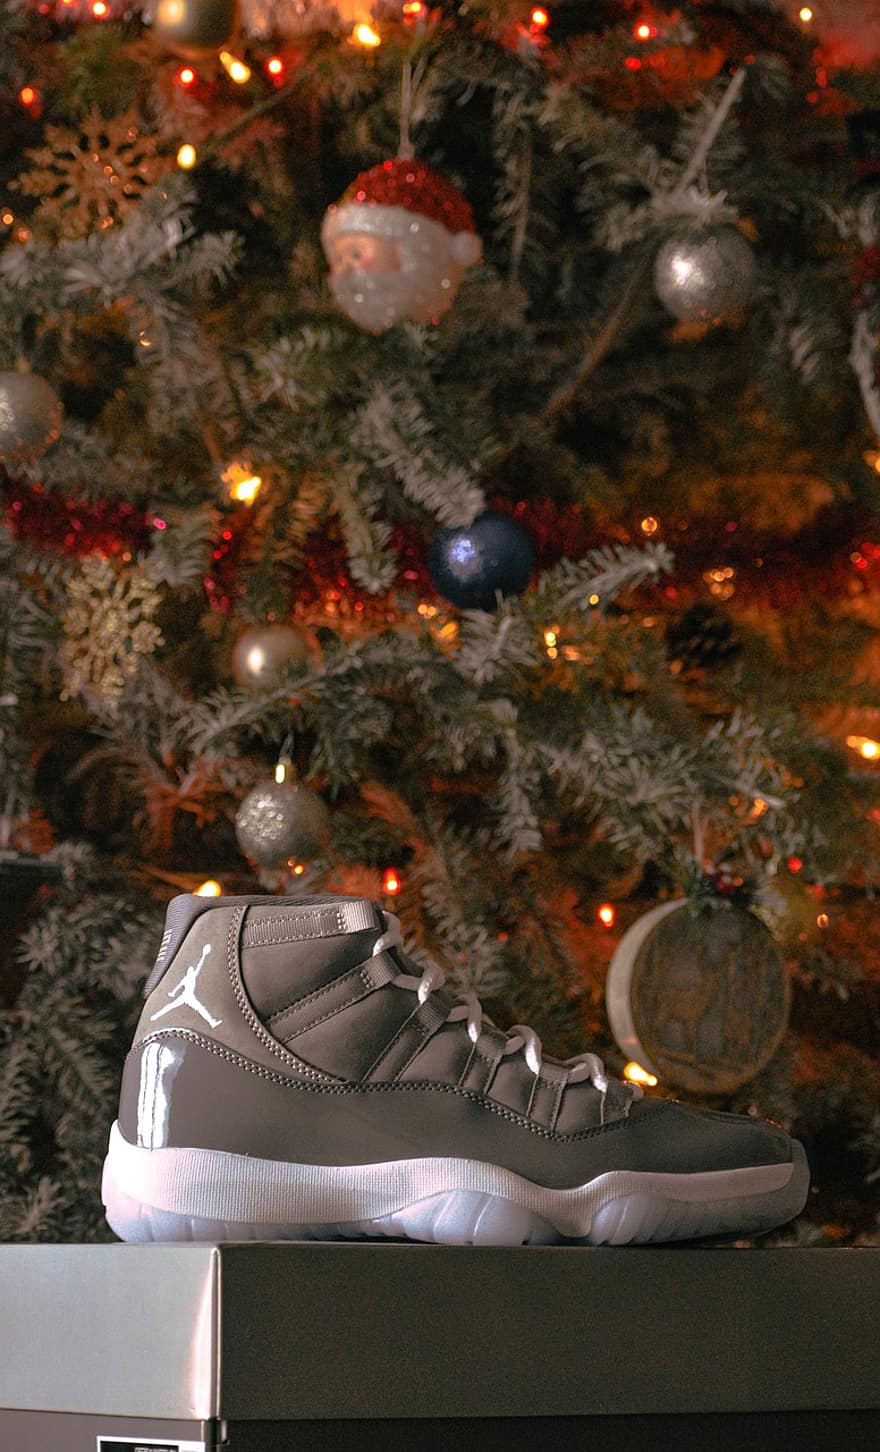 παπούτσια, Χριστούγεννα, μόδα, ταπετσαρία, κλείδωμα οθόνης, jordans